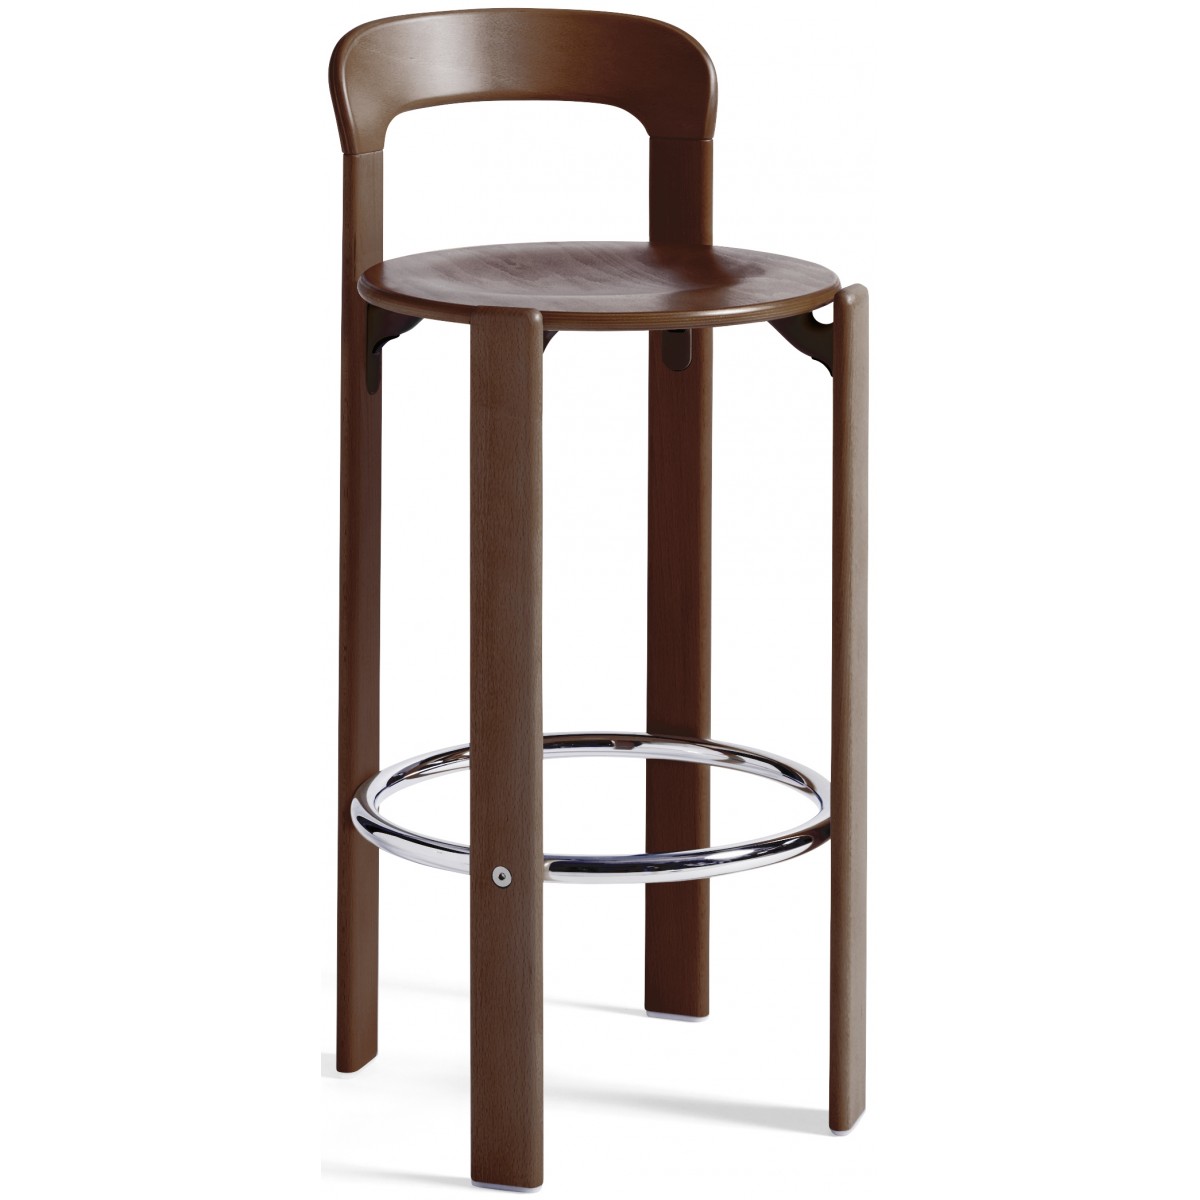 Umber brown - REY bar stool